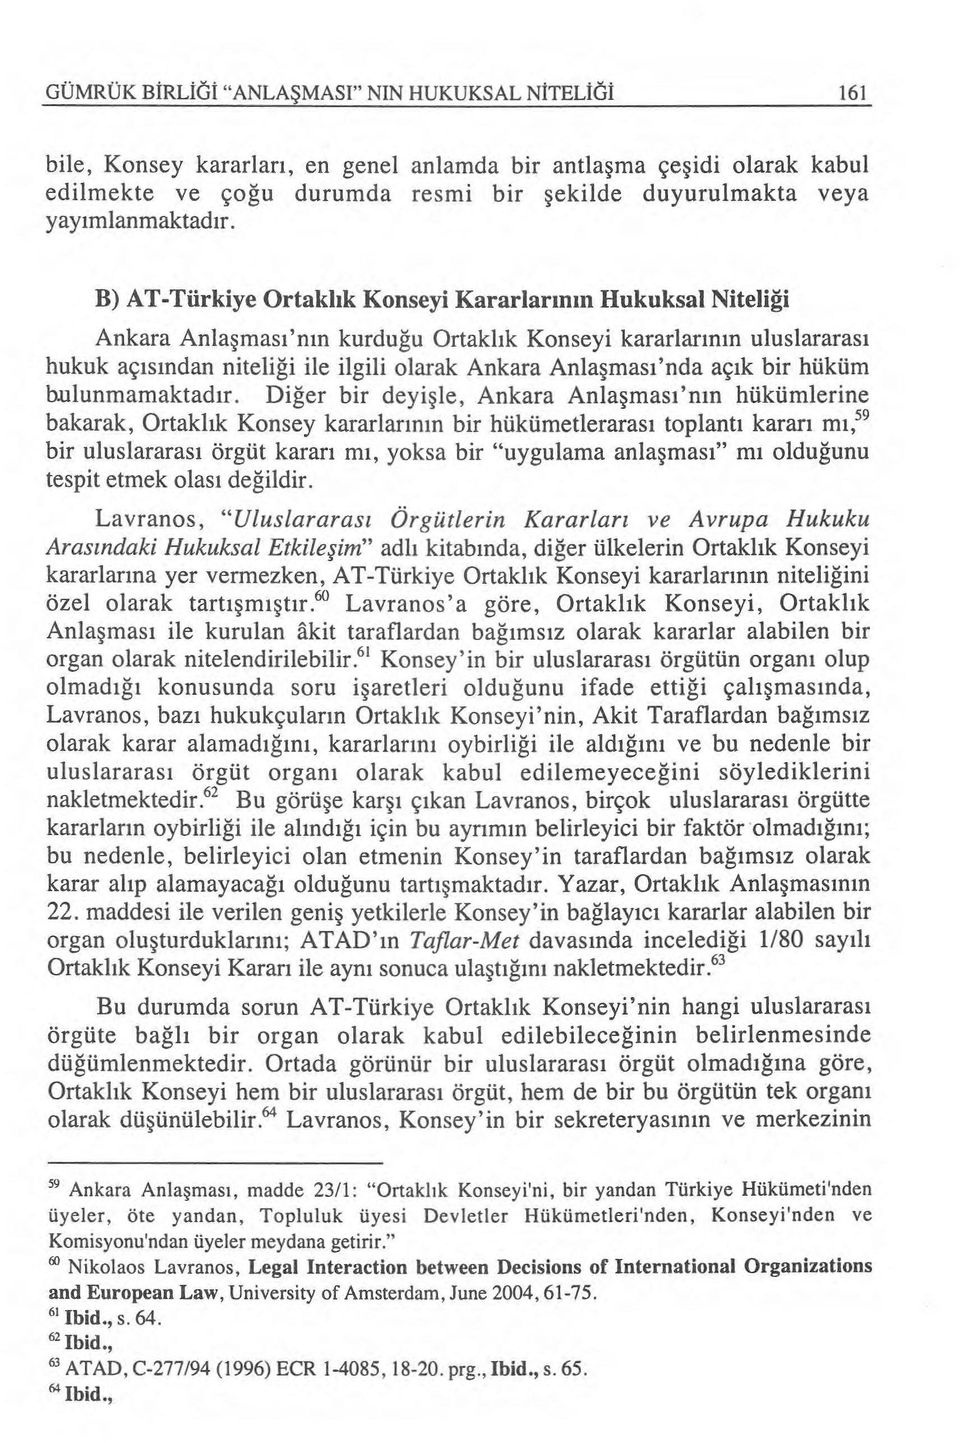 B) AT-Türkiye Ortakl ık Konseyi Kararlar ın ın Hukuksal Niteli ği Ankara Anla şmas ı 'n ın kurdu ğu Ortakl ık Konseyi kararlar ın ın uluslararas ı hukuk aç ı s ından niteli ği ile ilgili olarak